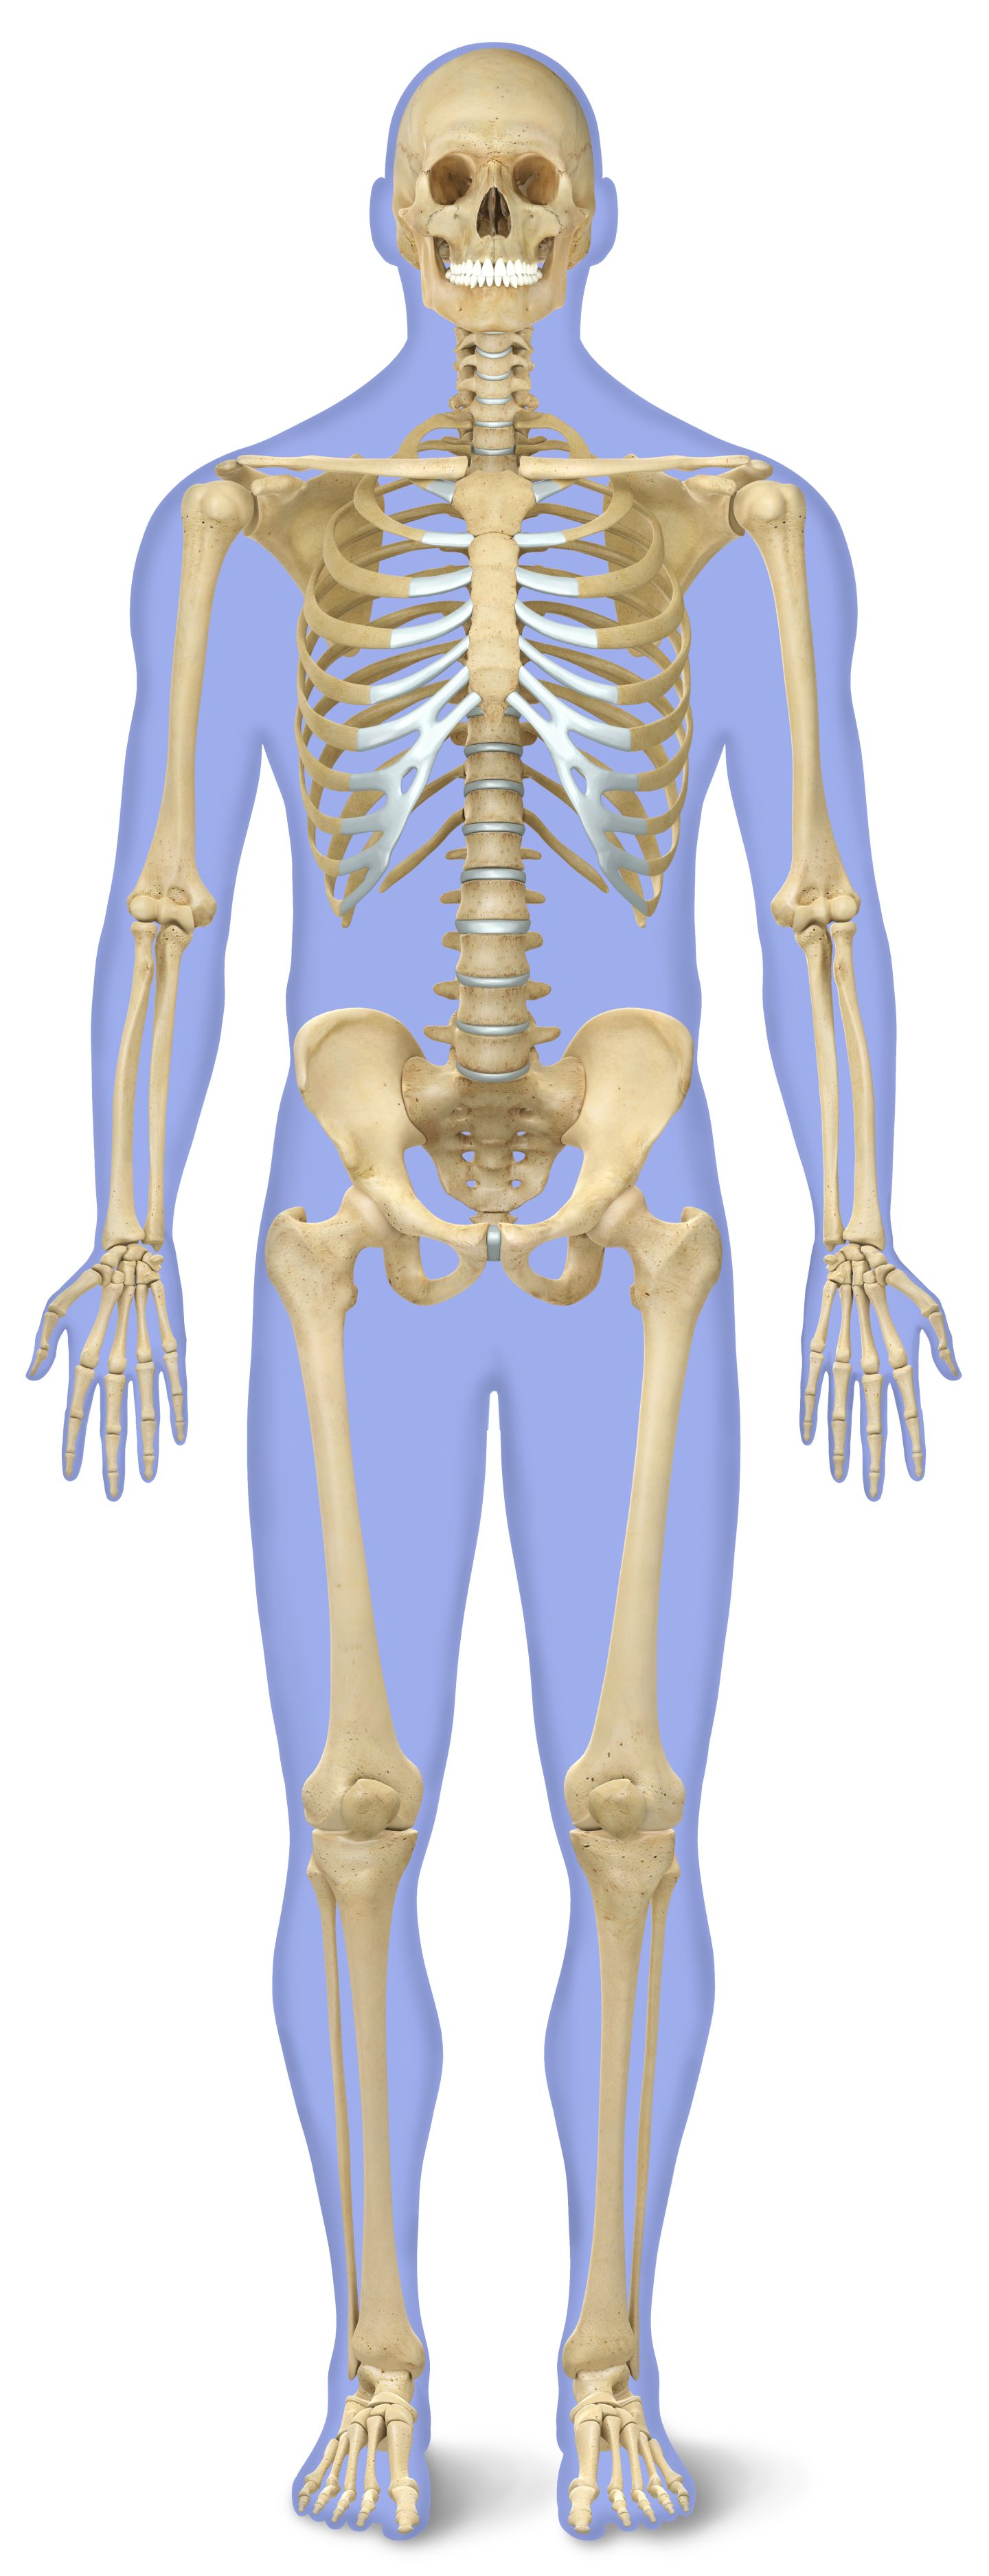 Image Of A Skeleton - KibrisPDR